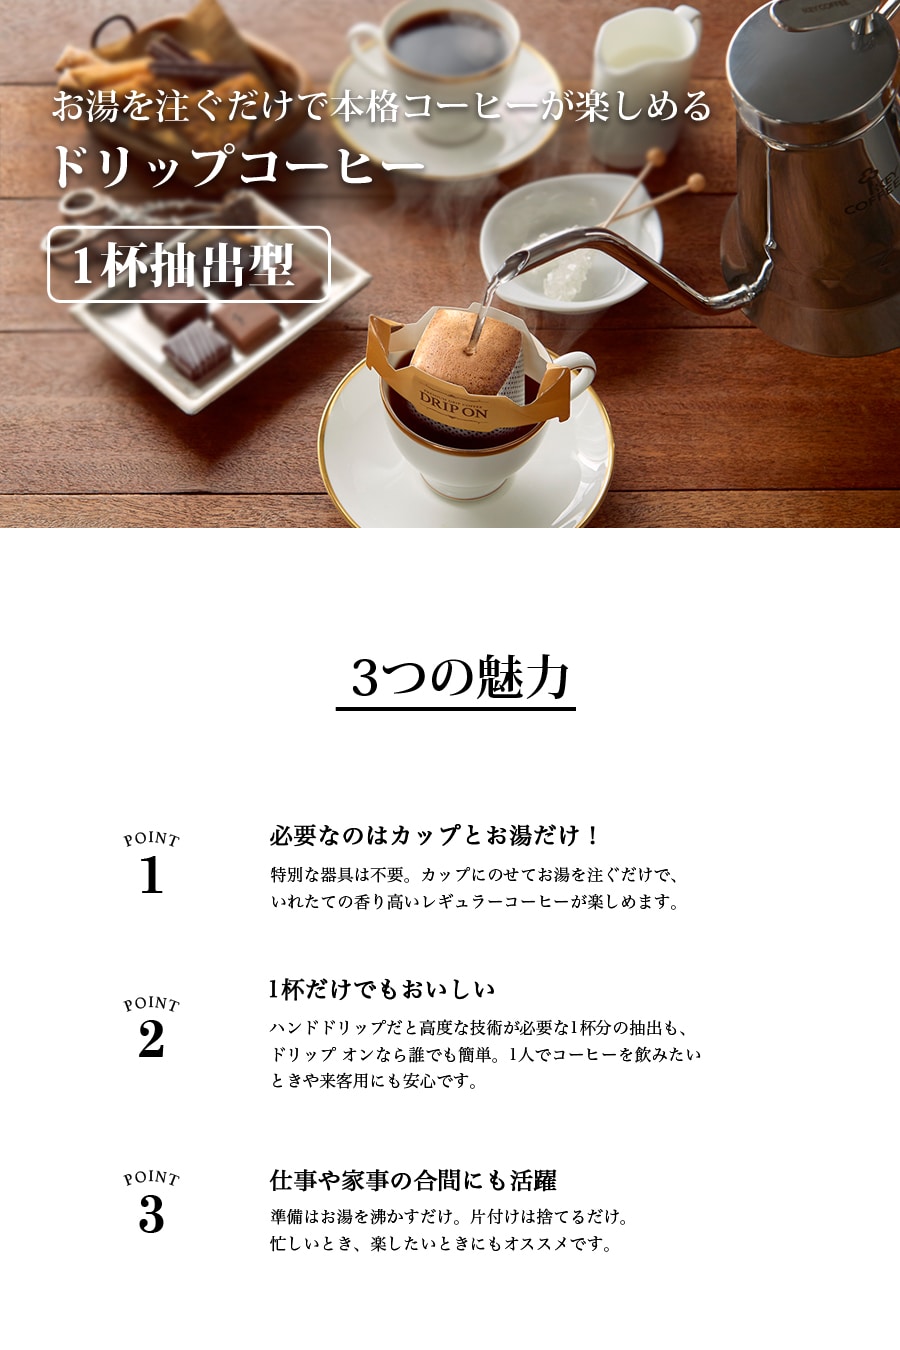 コーヒー CafePOD カフェポッド キリマンジェロブレンド 20杯分 × 6箱 120杯分 60mm キーコーヒー keycoffee 送料無料 おすすめ